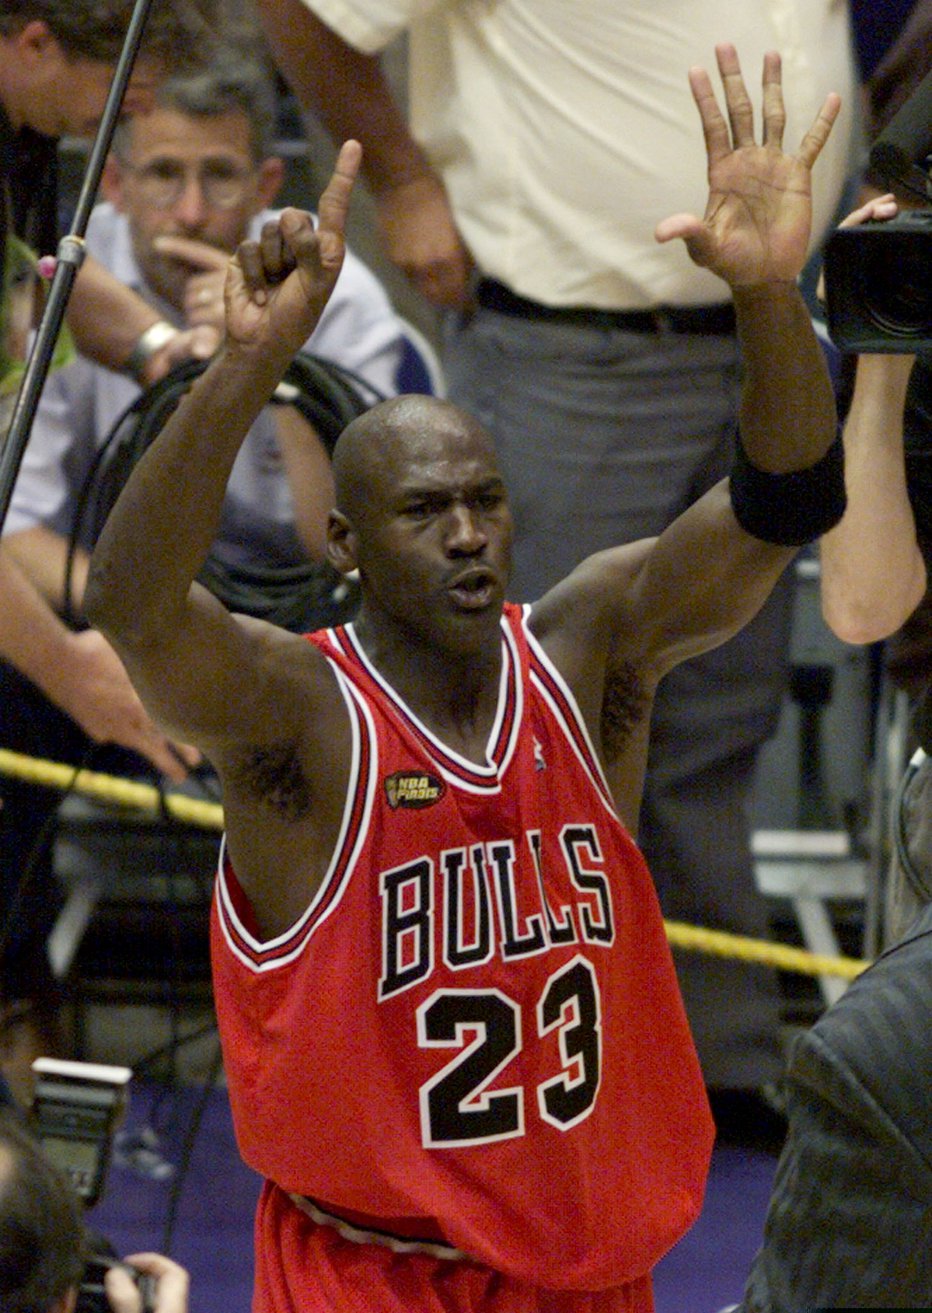 Fotografija: Michael Jordan je šestkratni prvak lige NBA. FOTO: Gary Hershorn/Reuters